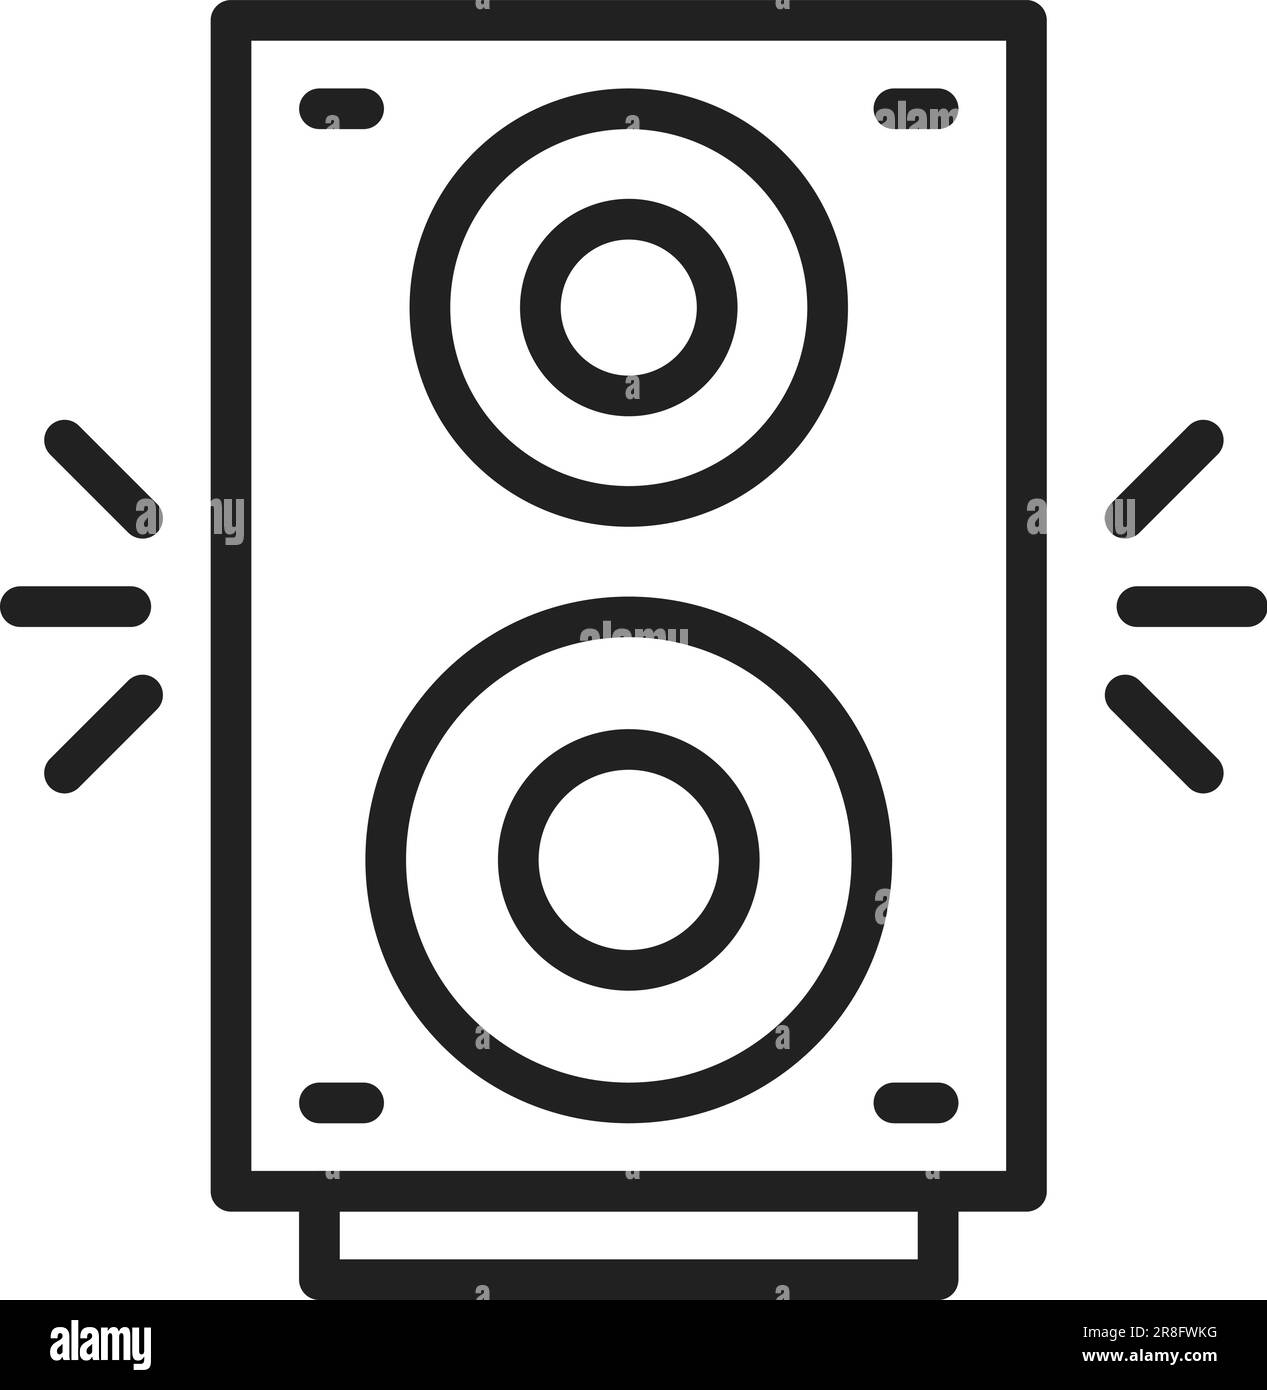 Image de l'icône du haut-parleur Image Vectorielle Stock - Alamy